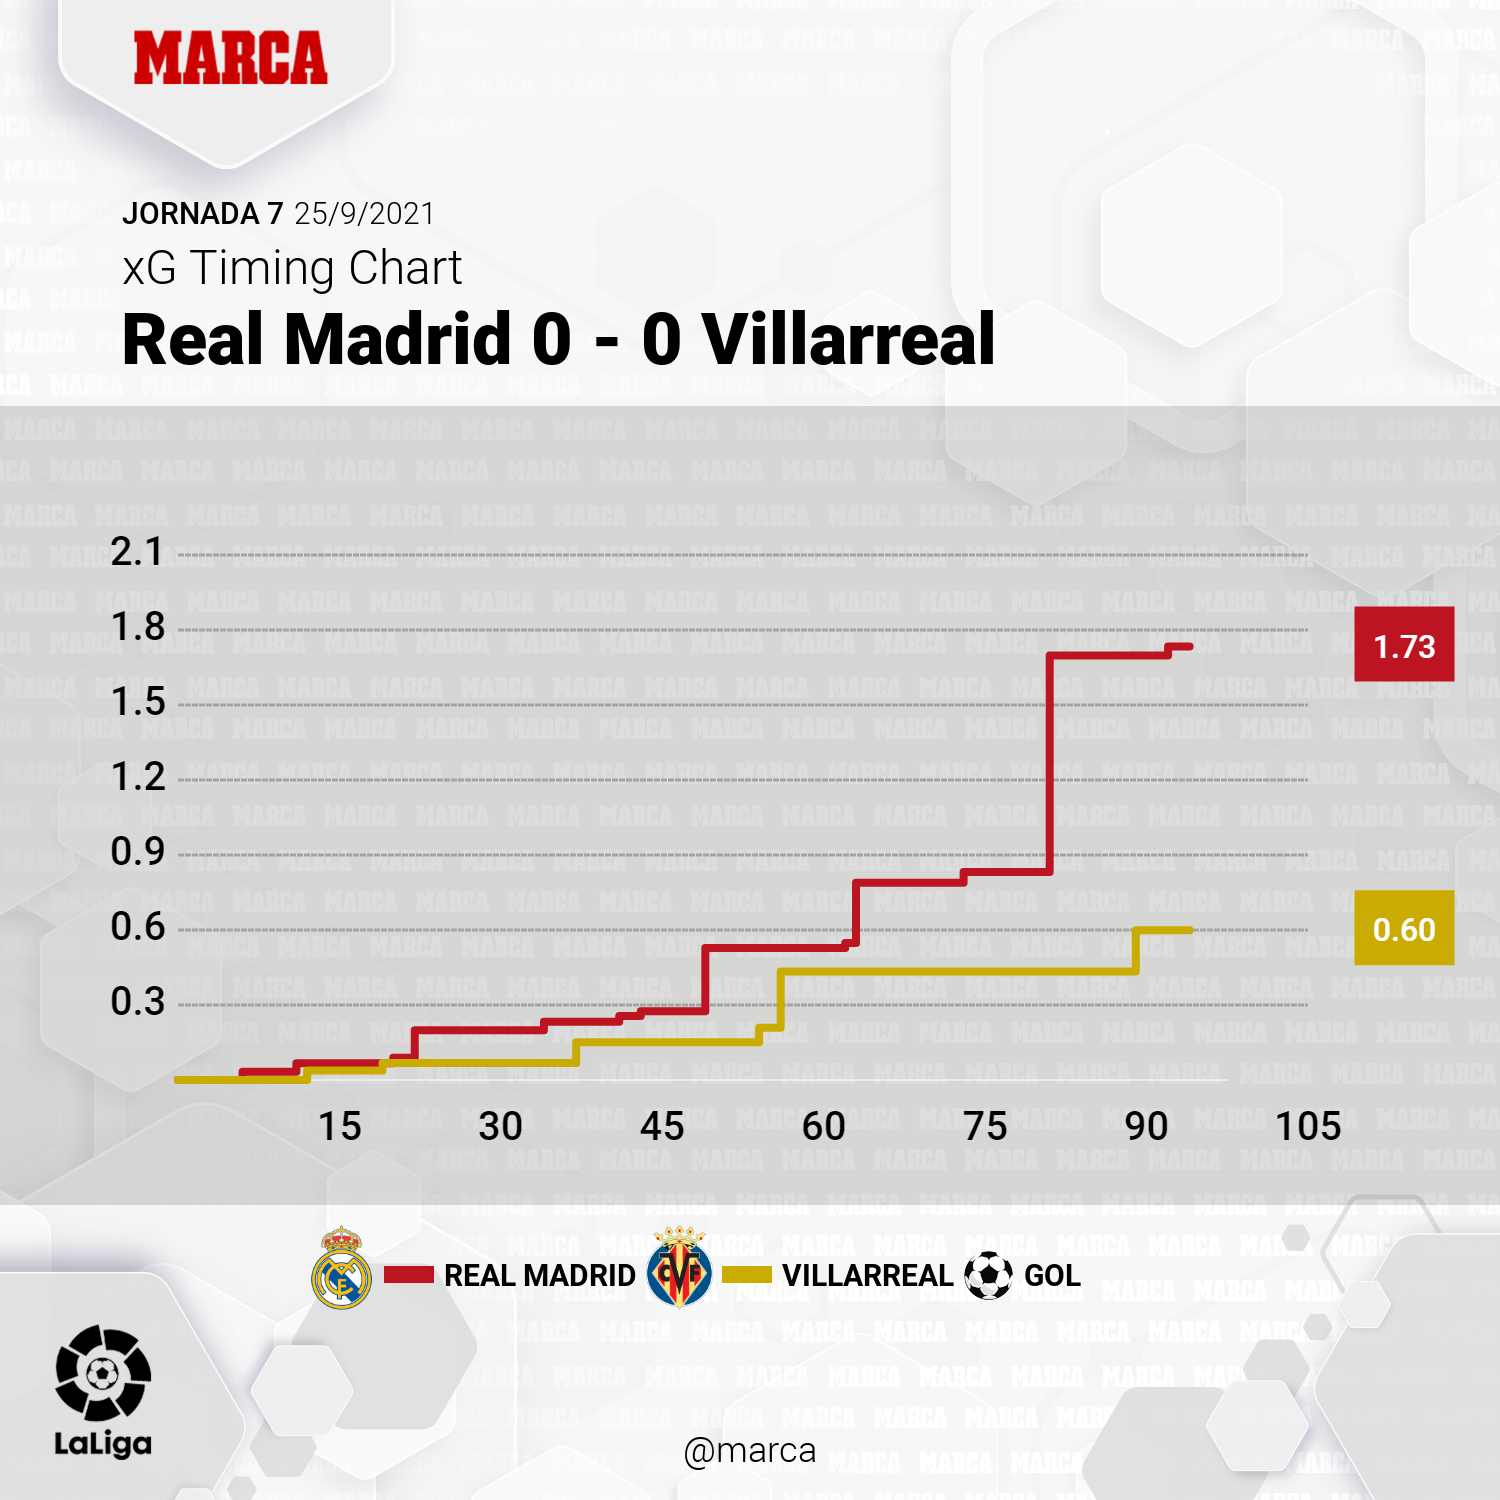 Estadísticas de villarreal club de fútbol contra real madrid